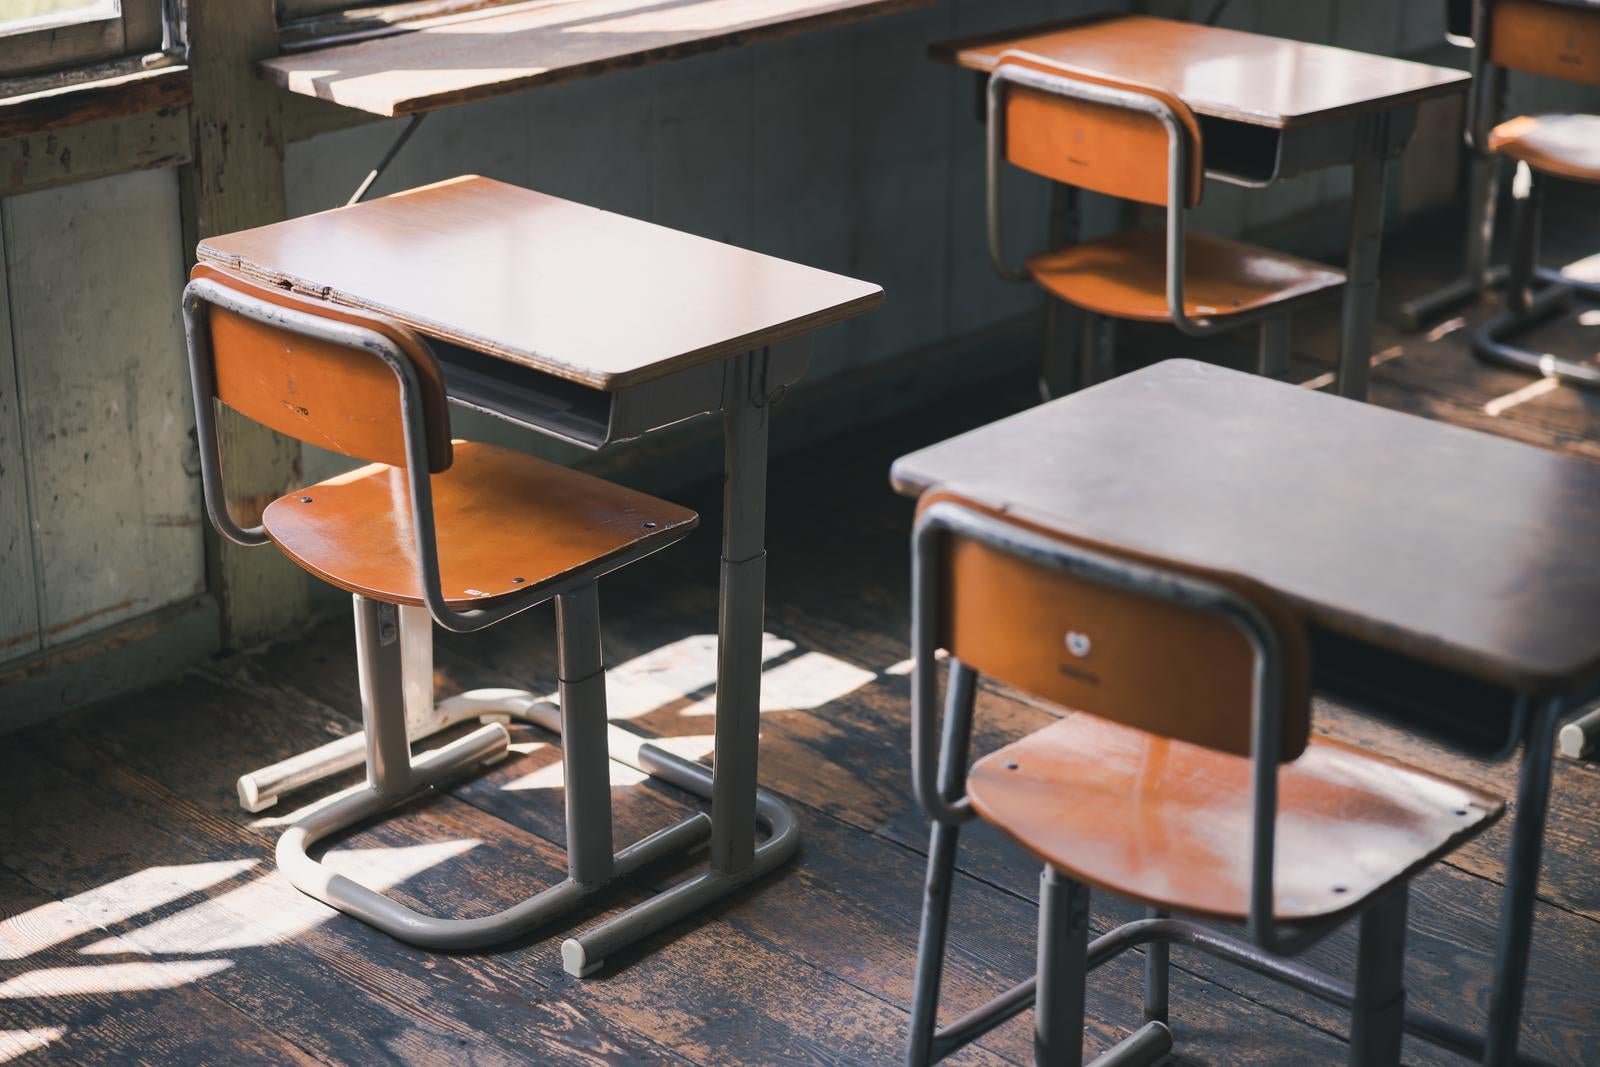 「放課後の学習机と椅子が並ぶ教室」の写真